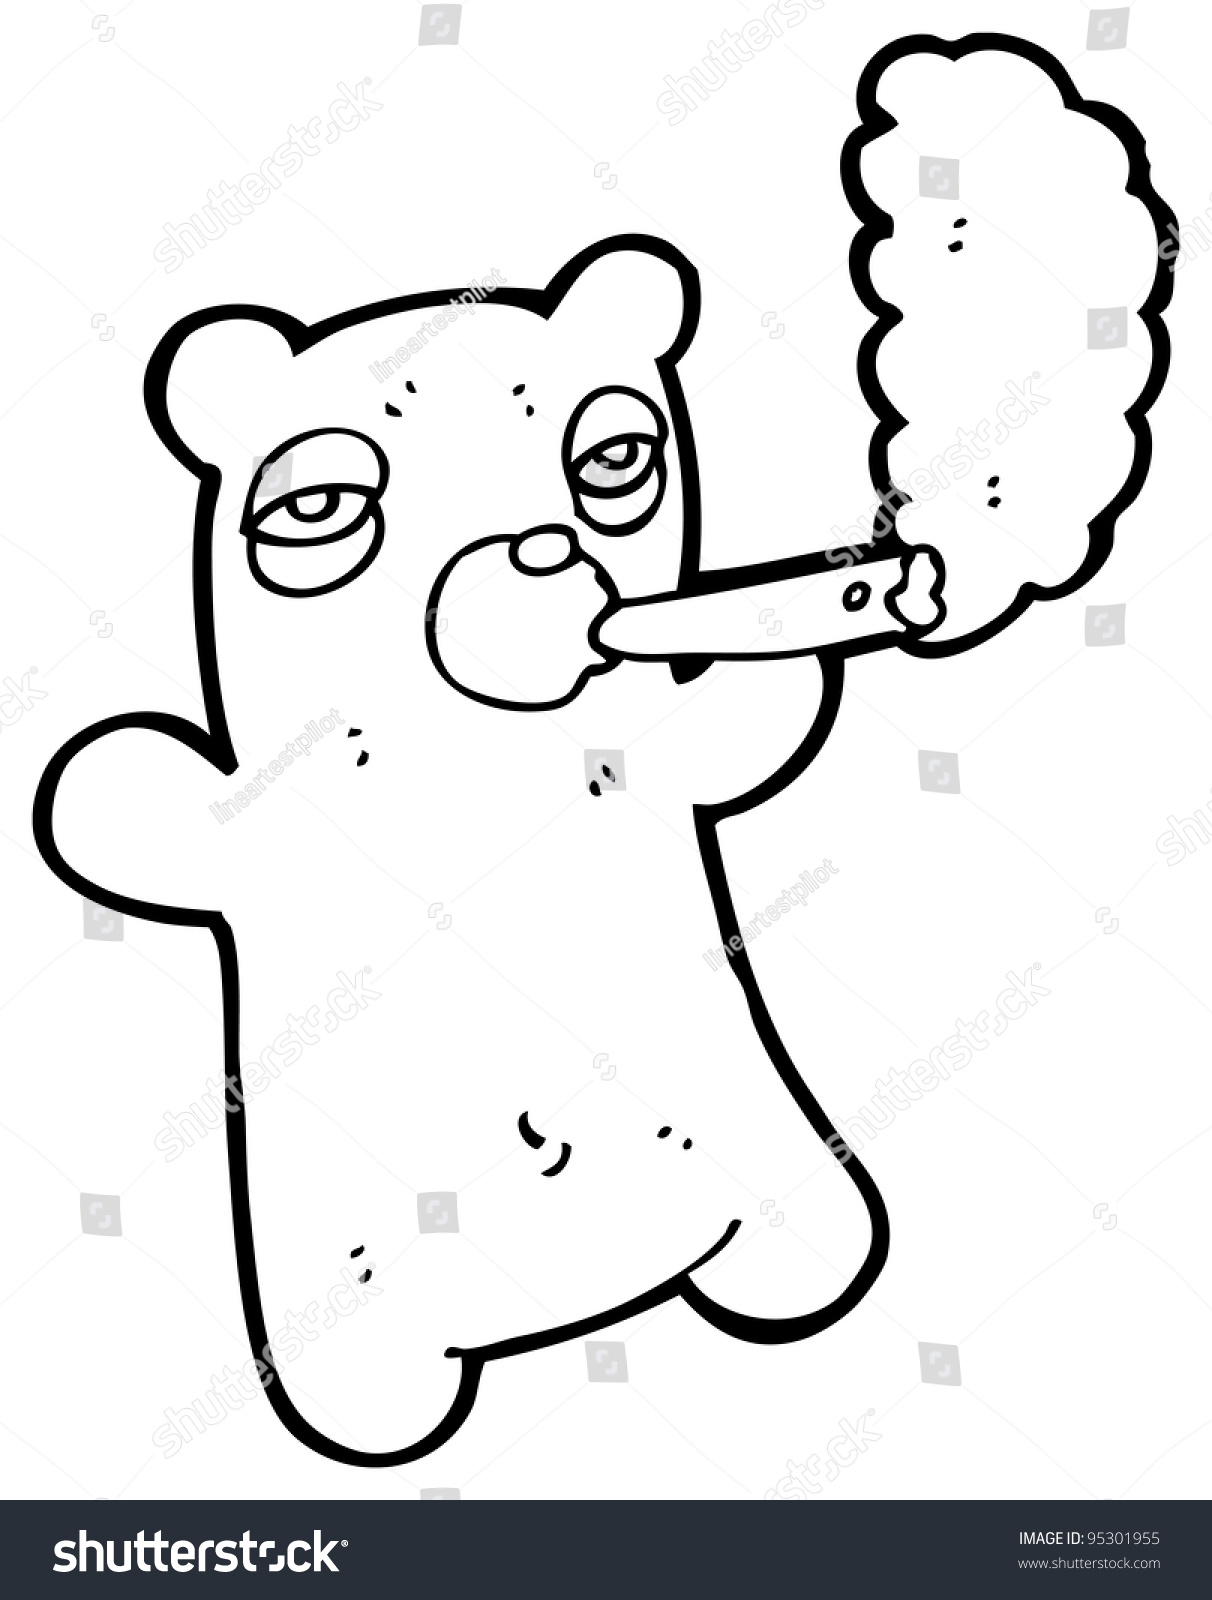 Bear Smoking Joint Cartoon: стоковая иллюстрация, 95301955 Shutterstock.